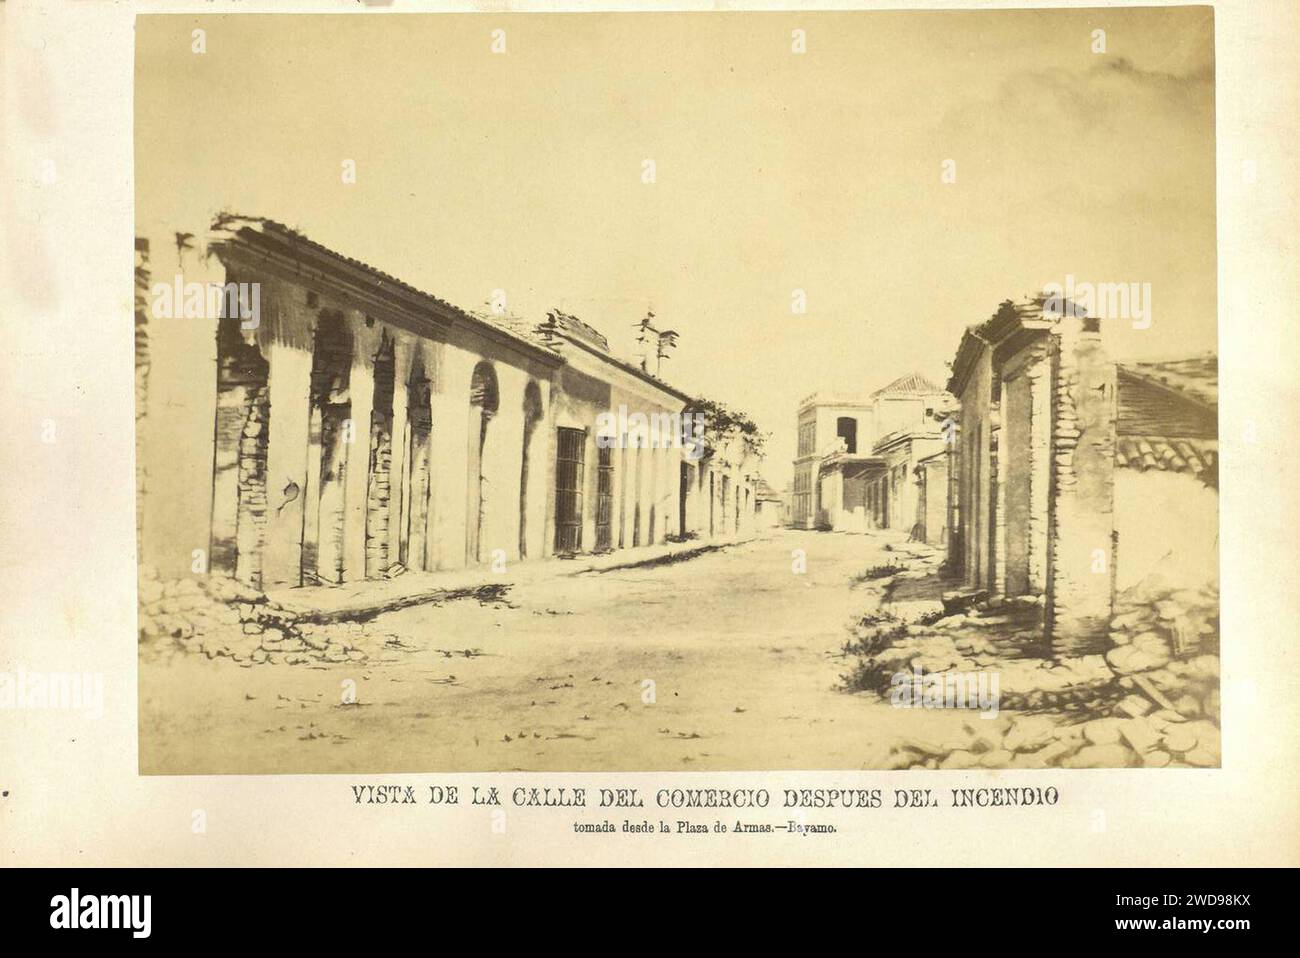 1872, Álbum histórico fotográfico de la Guerra de Cuba desde su principio hasta el Reinado de Amadeo I, Vista de la calle del Comercio después del incendio, tomada desde la plaza de Armas.—Bayamo. Stock Photo